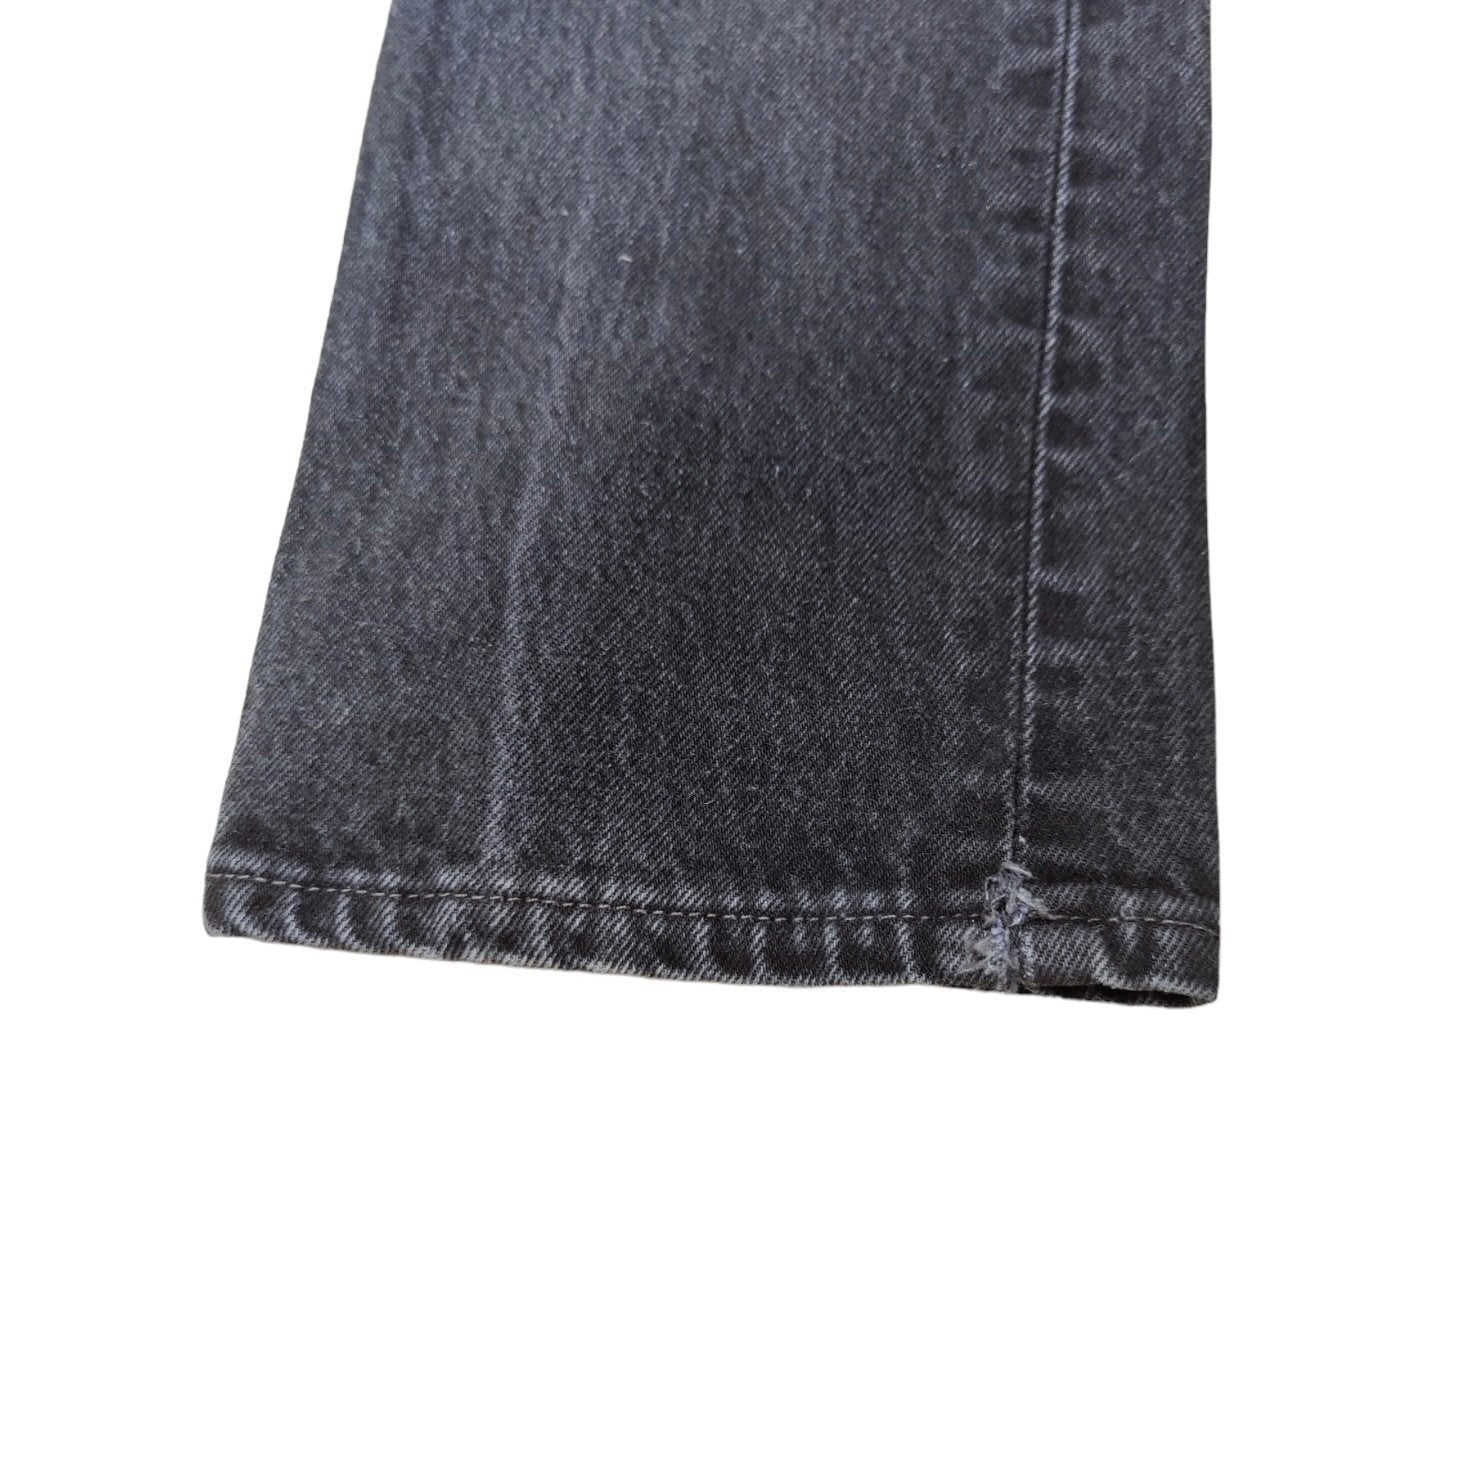 Vintage Levis 501 Black/Grey Jeans (W26/L32)